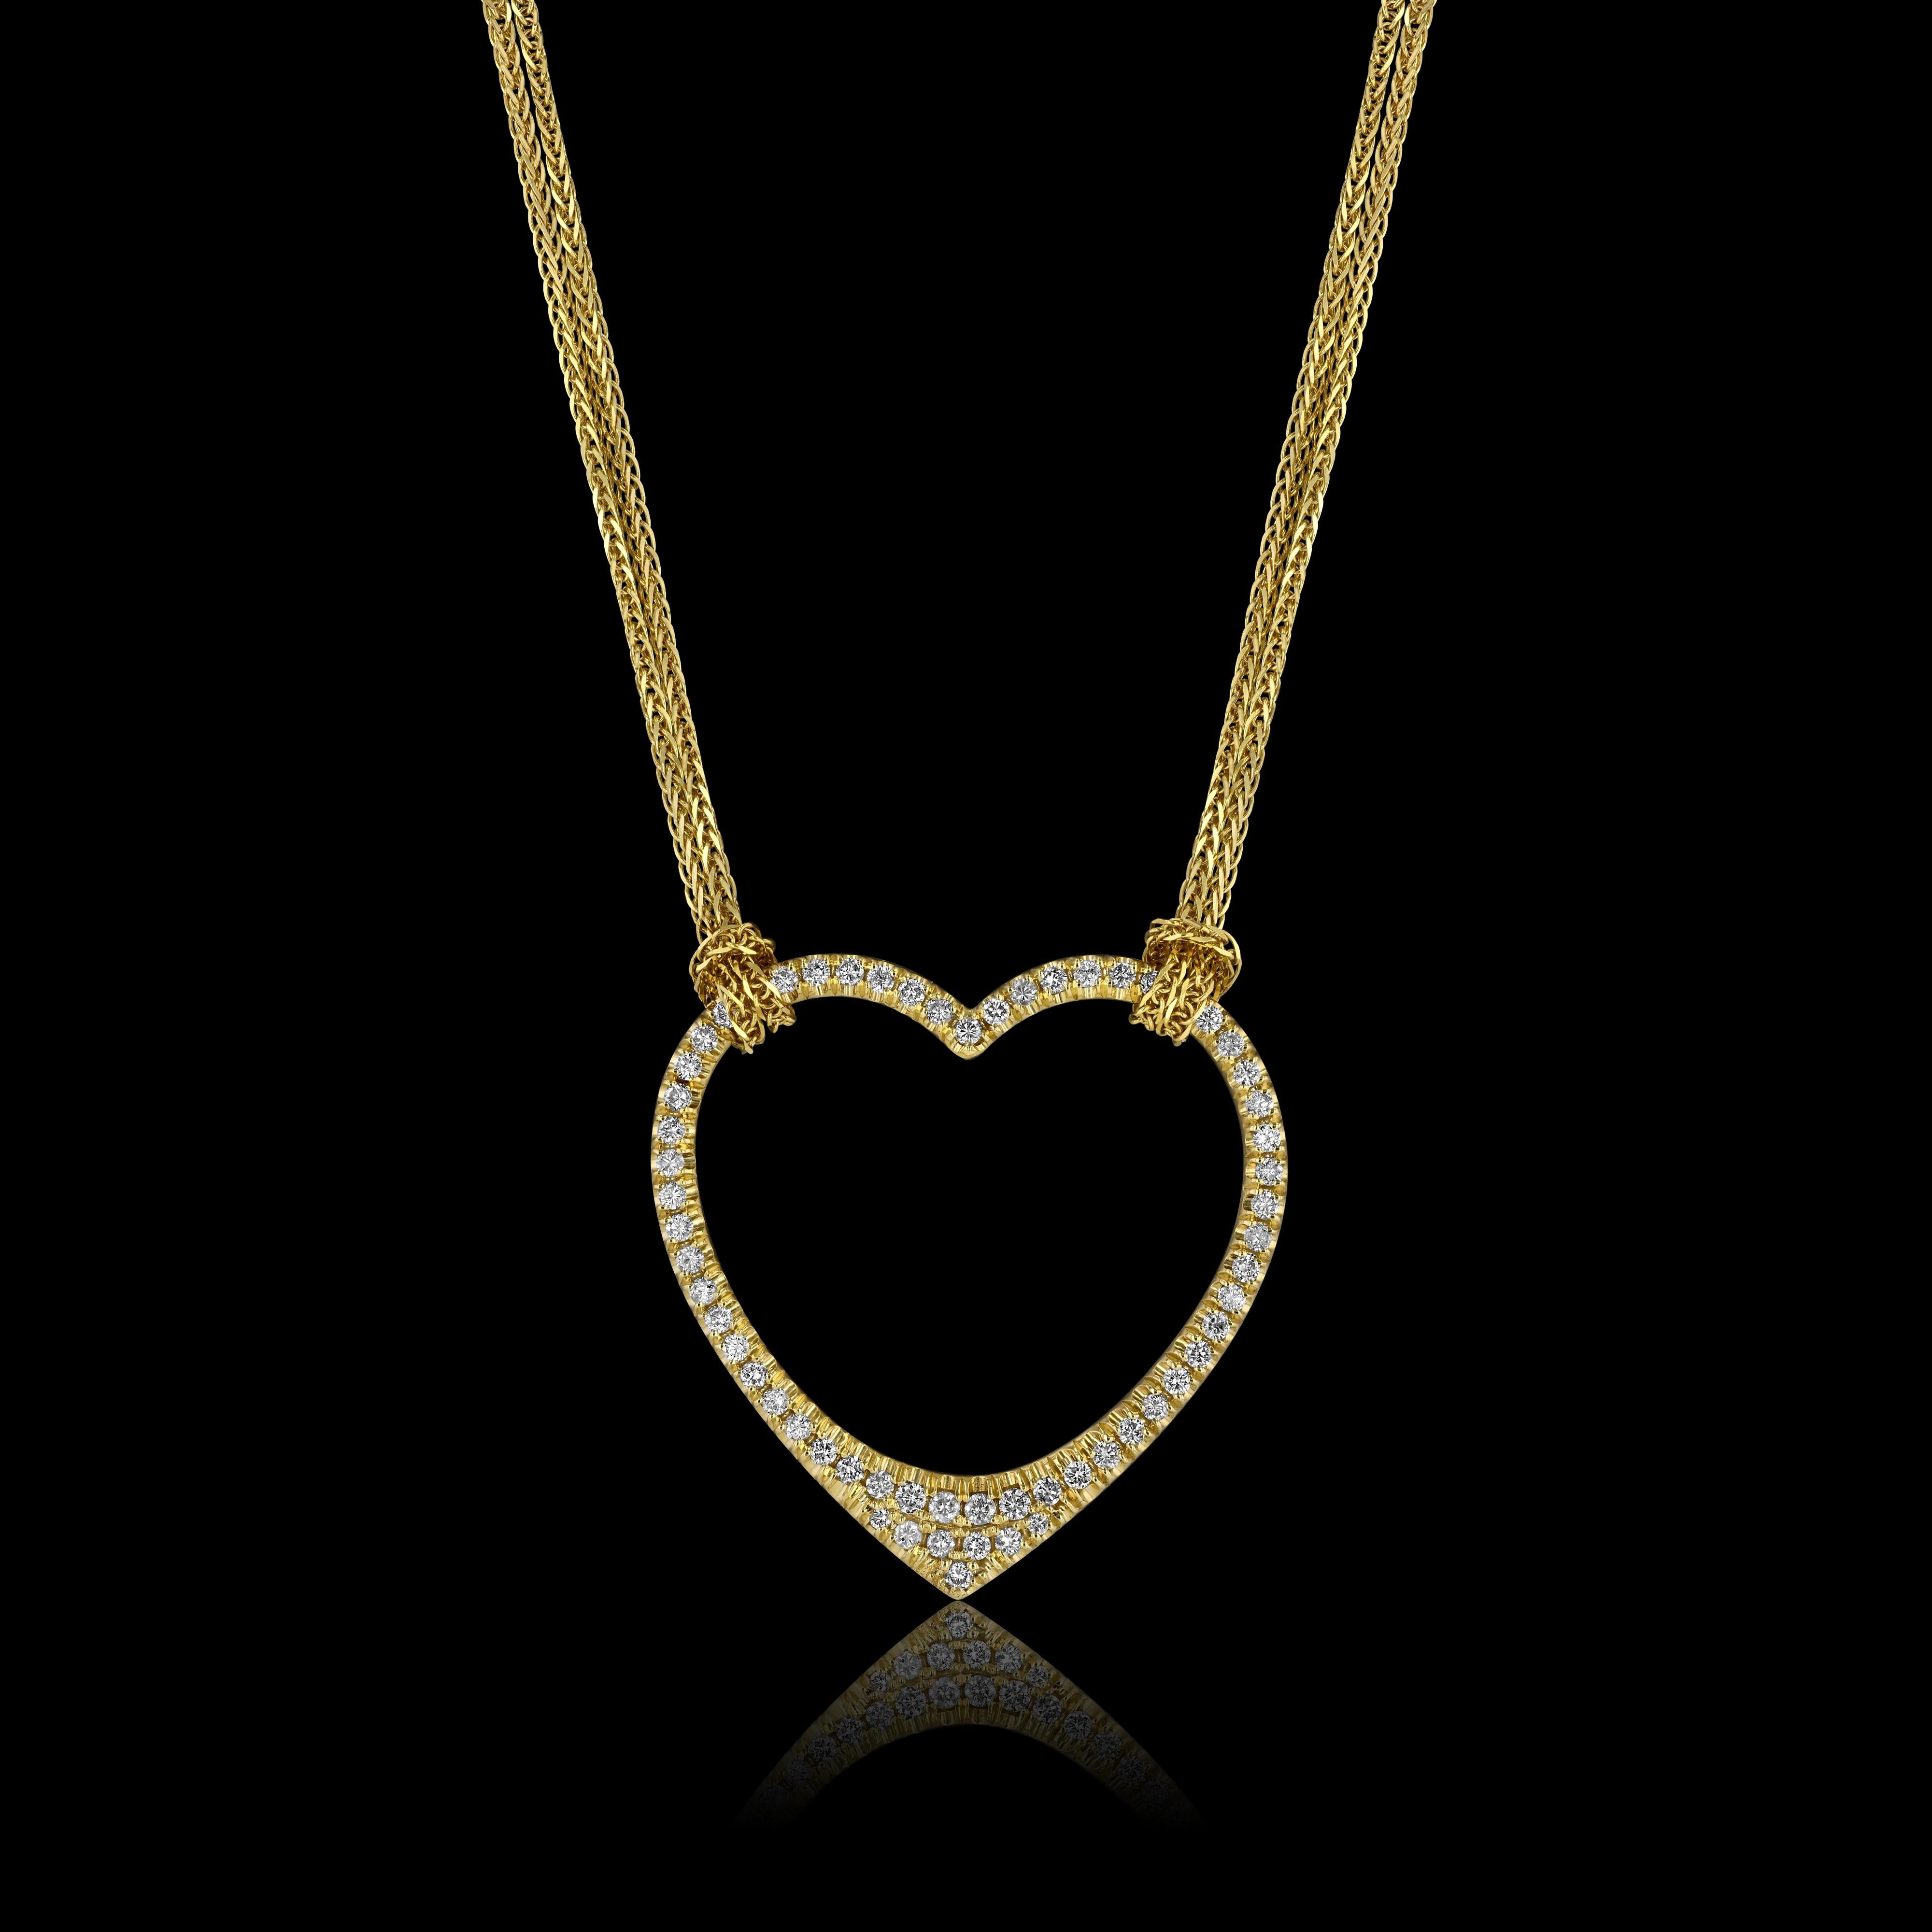 Pendentif en forme de cœur en or jaune 10k, sculpté à la main, de la House of Diamonds Collectional. 

Comprend 66 diamants (1,31ct) et une chaîne de 18